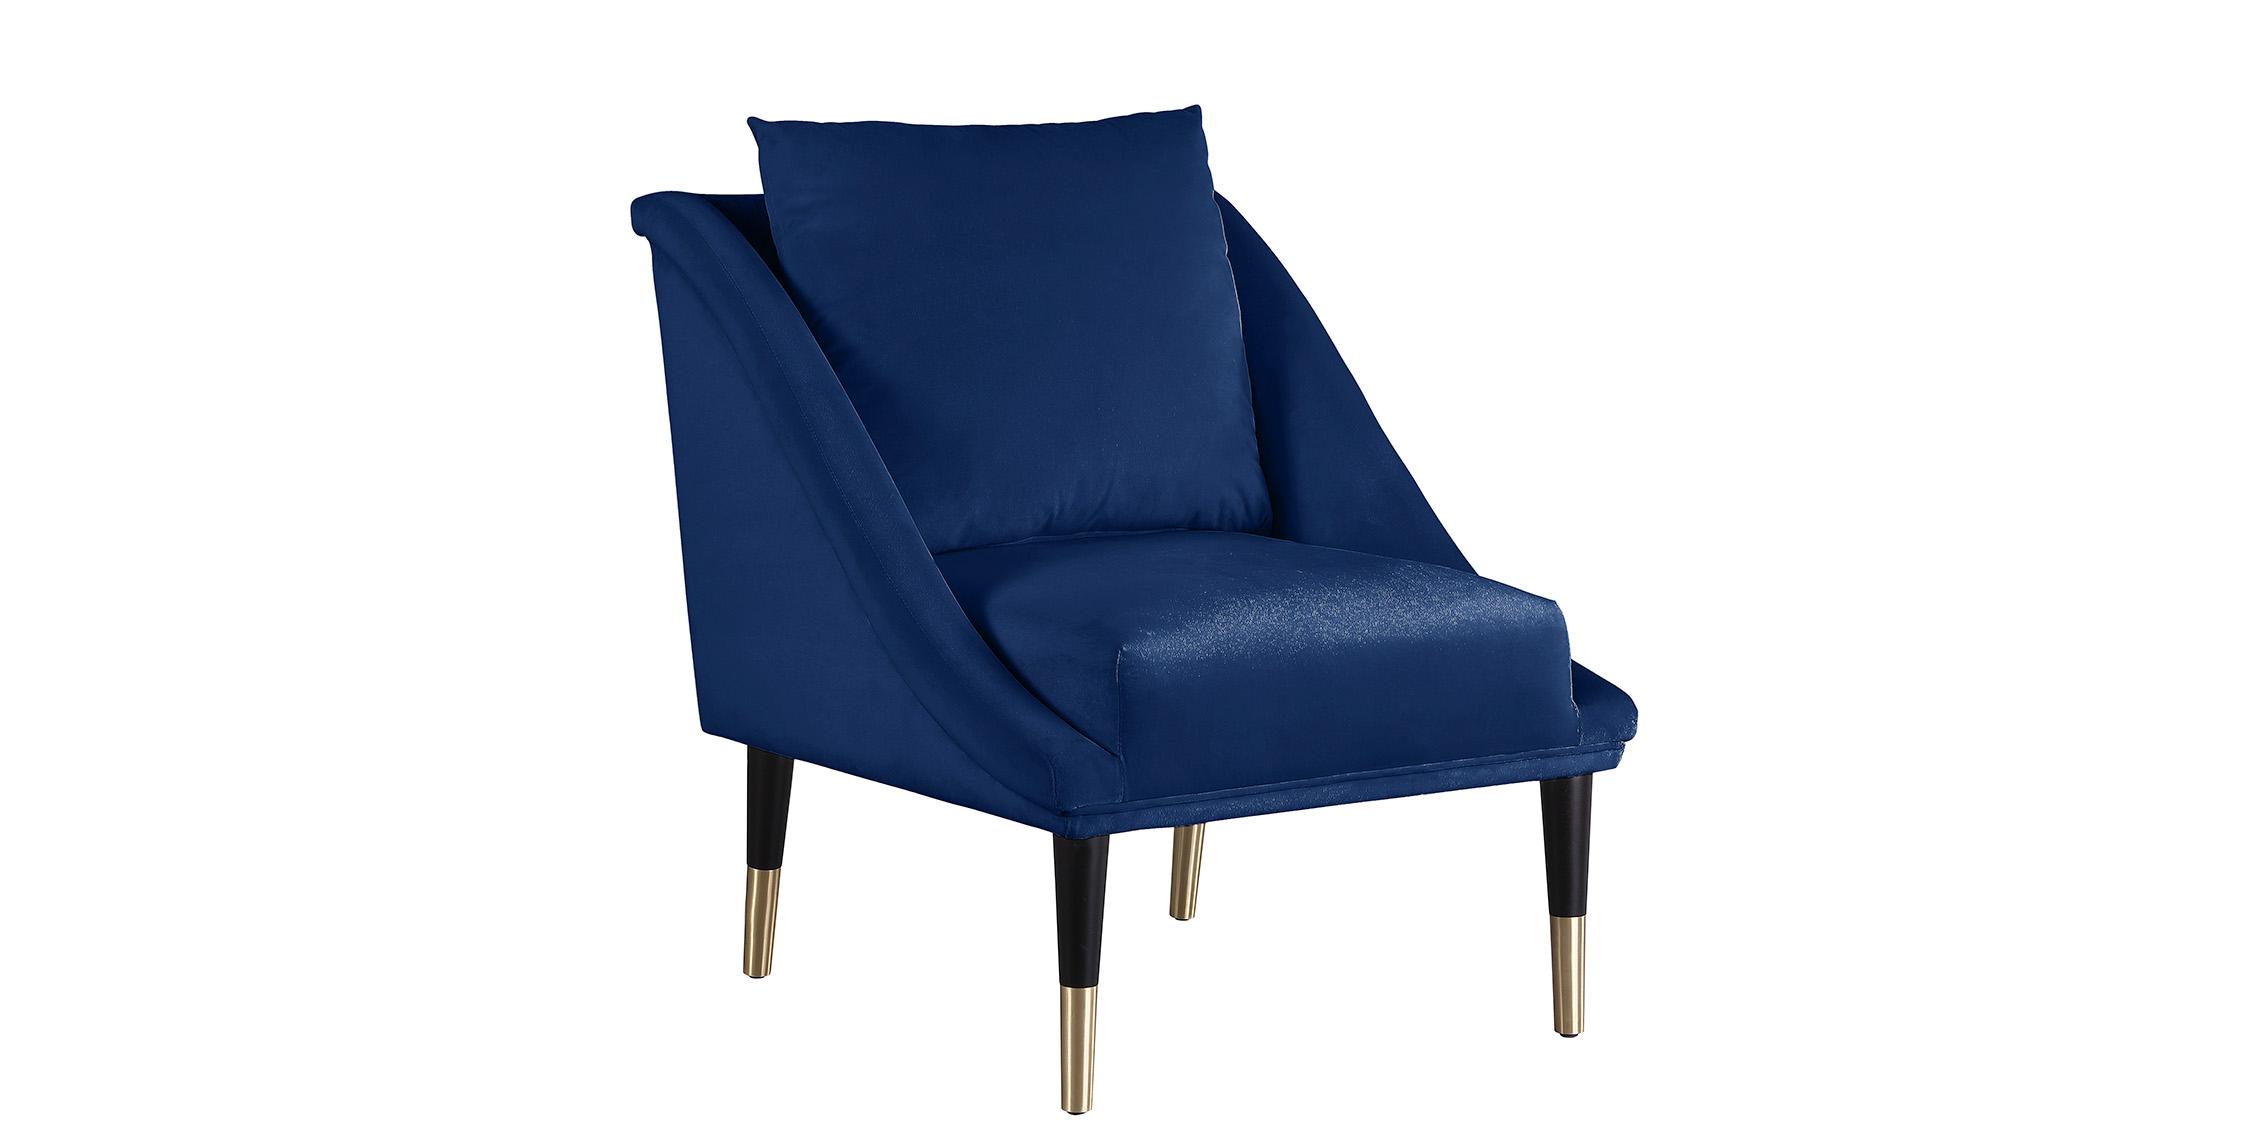 Contemporary, Modern Accent Chair ELEGANTE 517Navy-C 517Navy-C in Navy Velvet